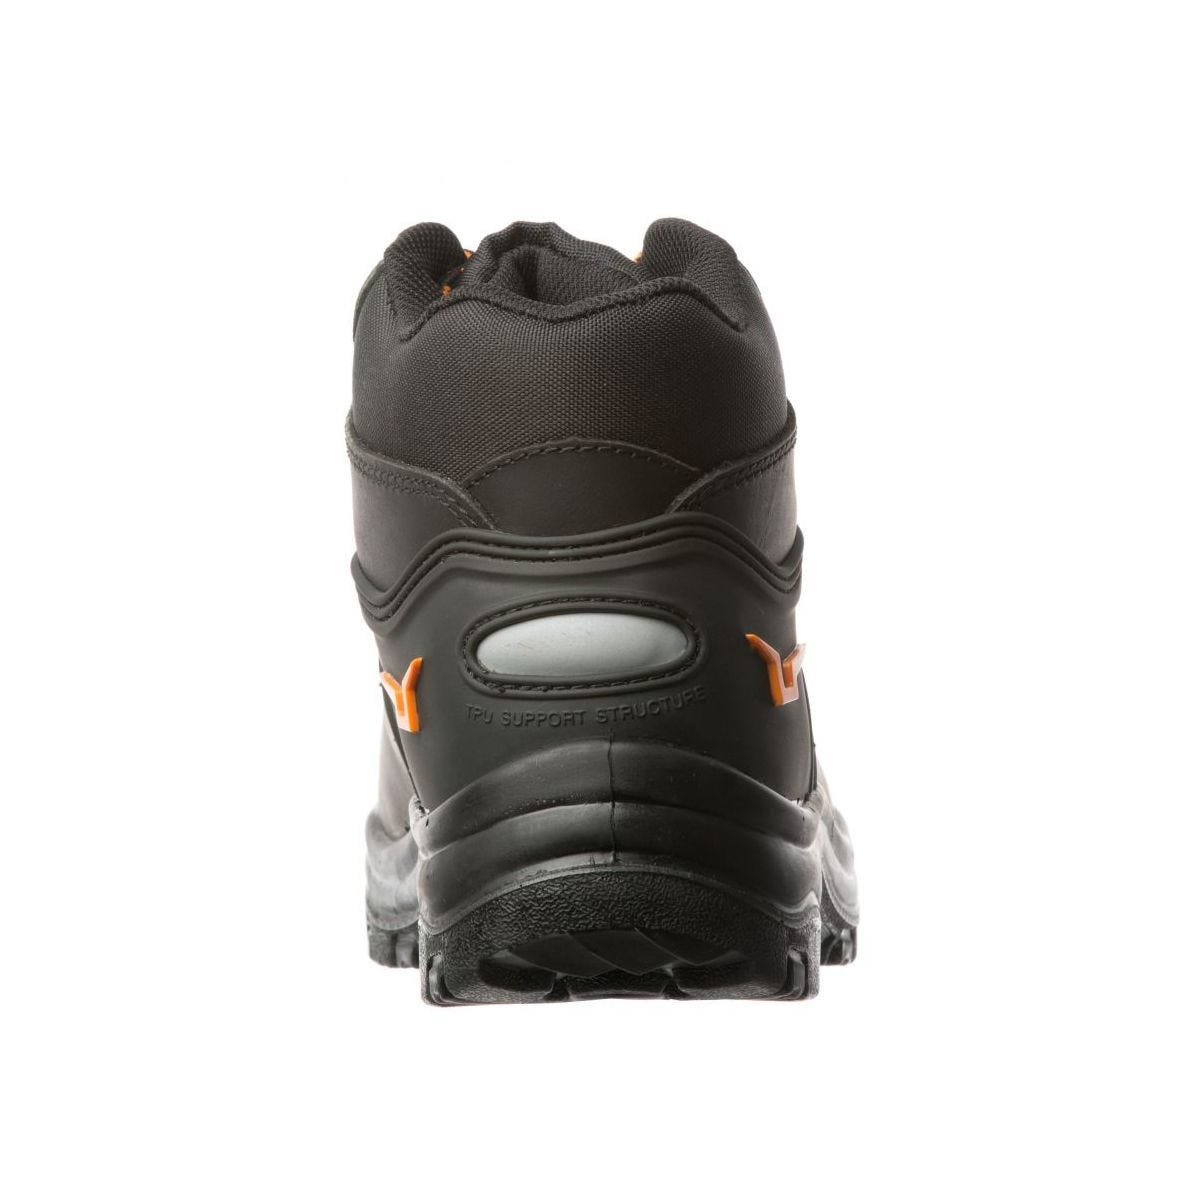 Chaussures de sécurité hautes S3 SRC OPAL composite Noir - Coverguard - Taille 42 3